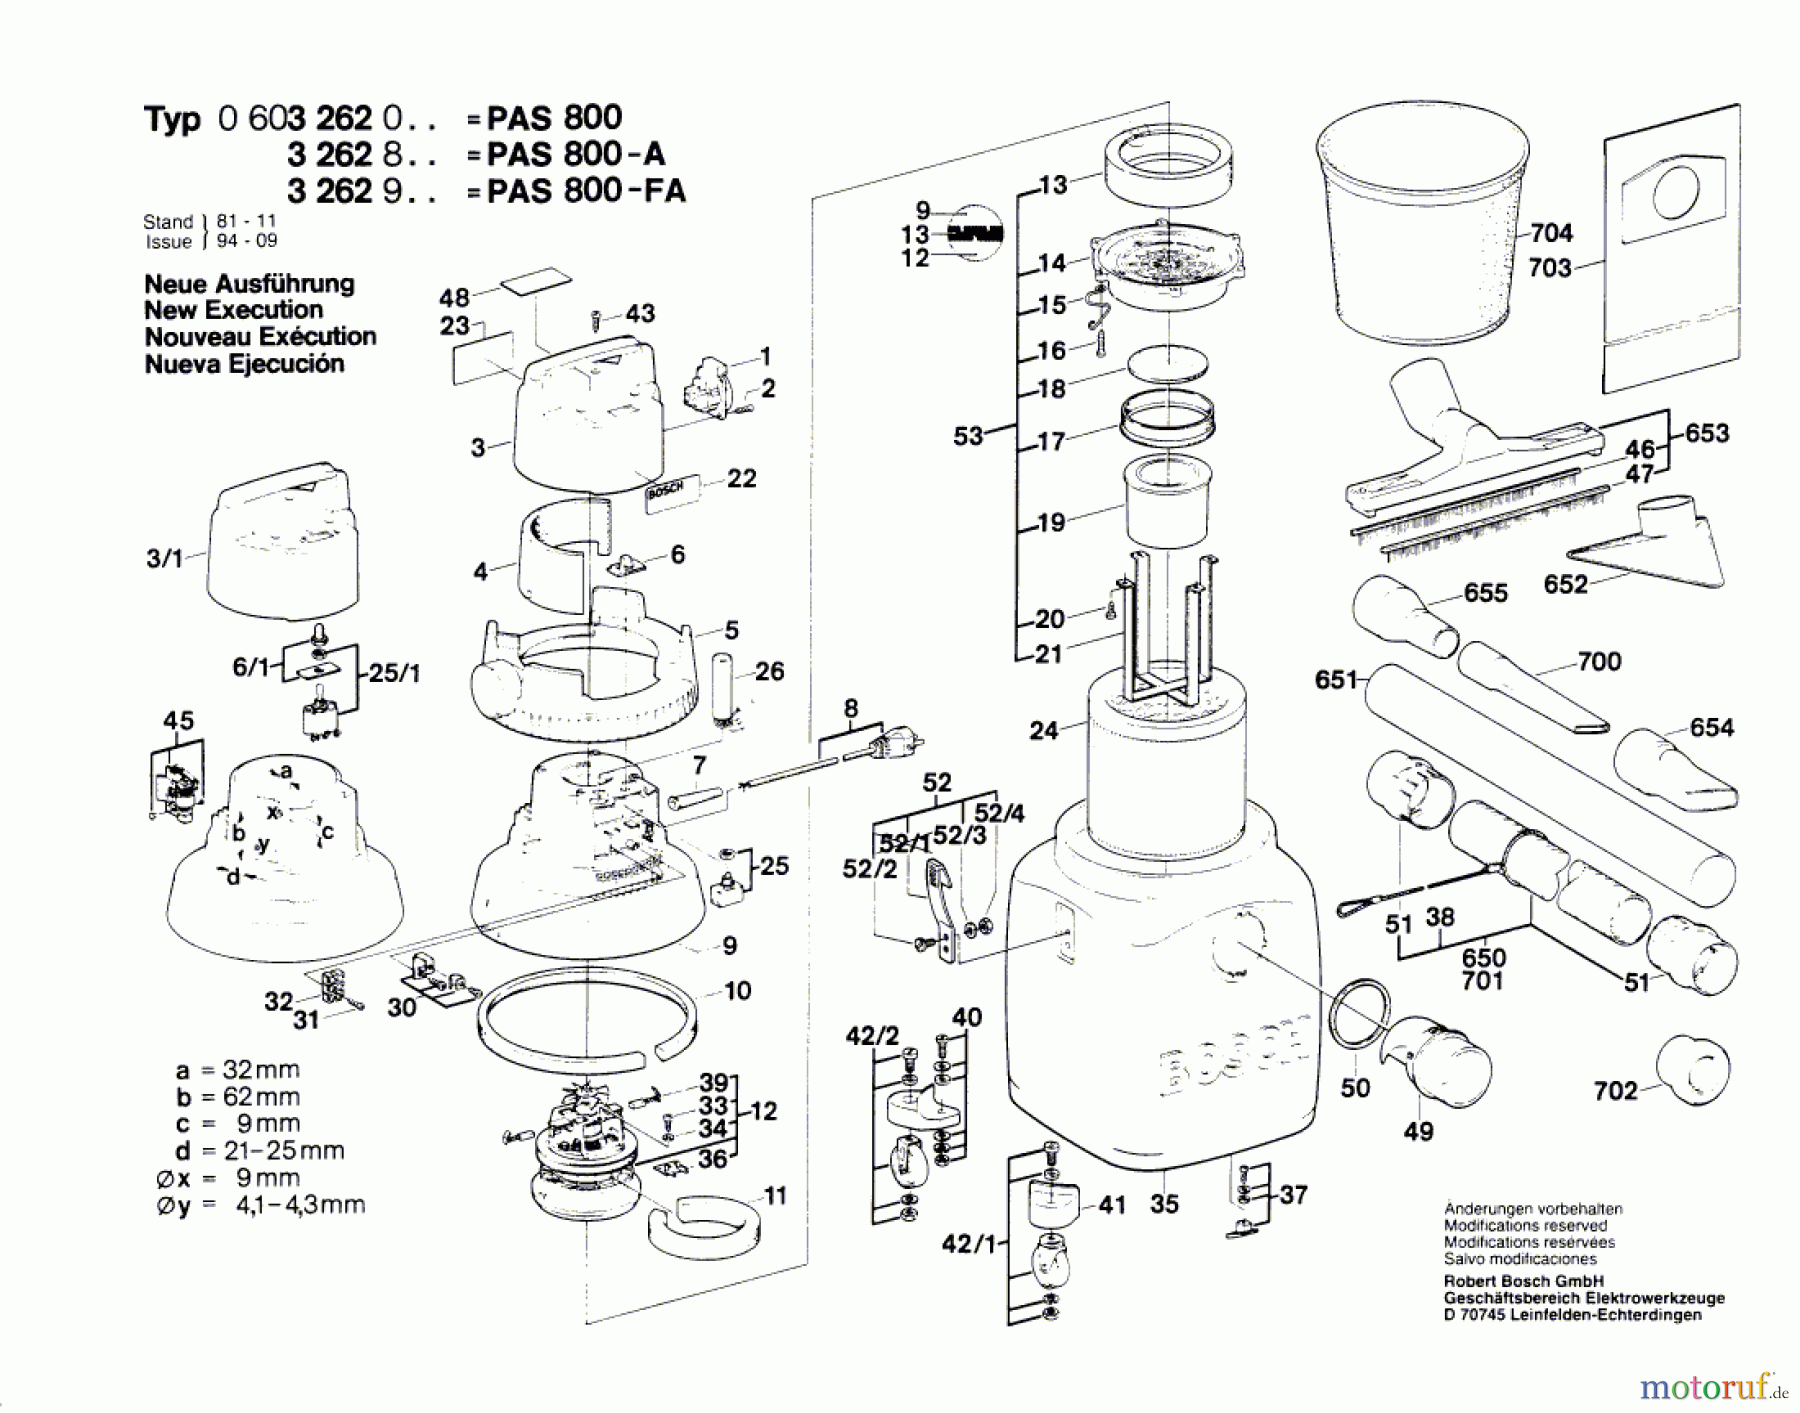  Bosch Werkzeug Allzwecksauger PAS 800 A Seite 1